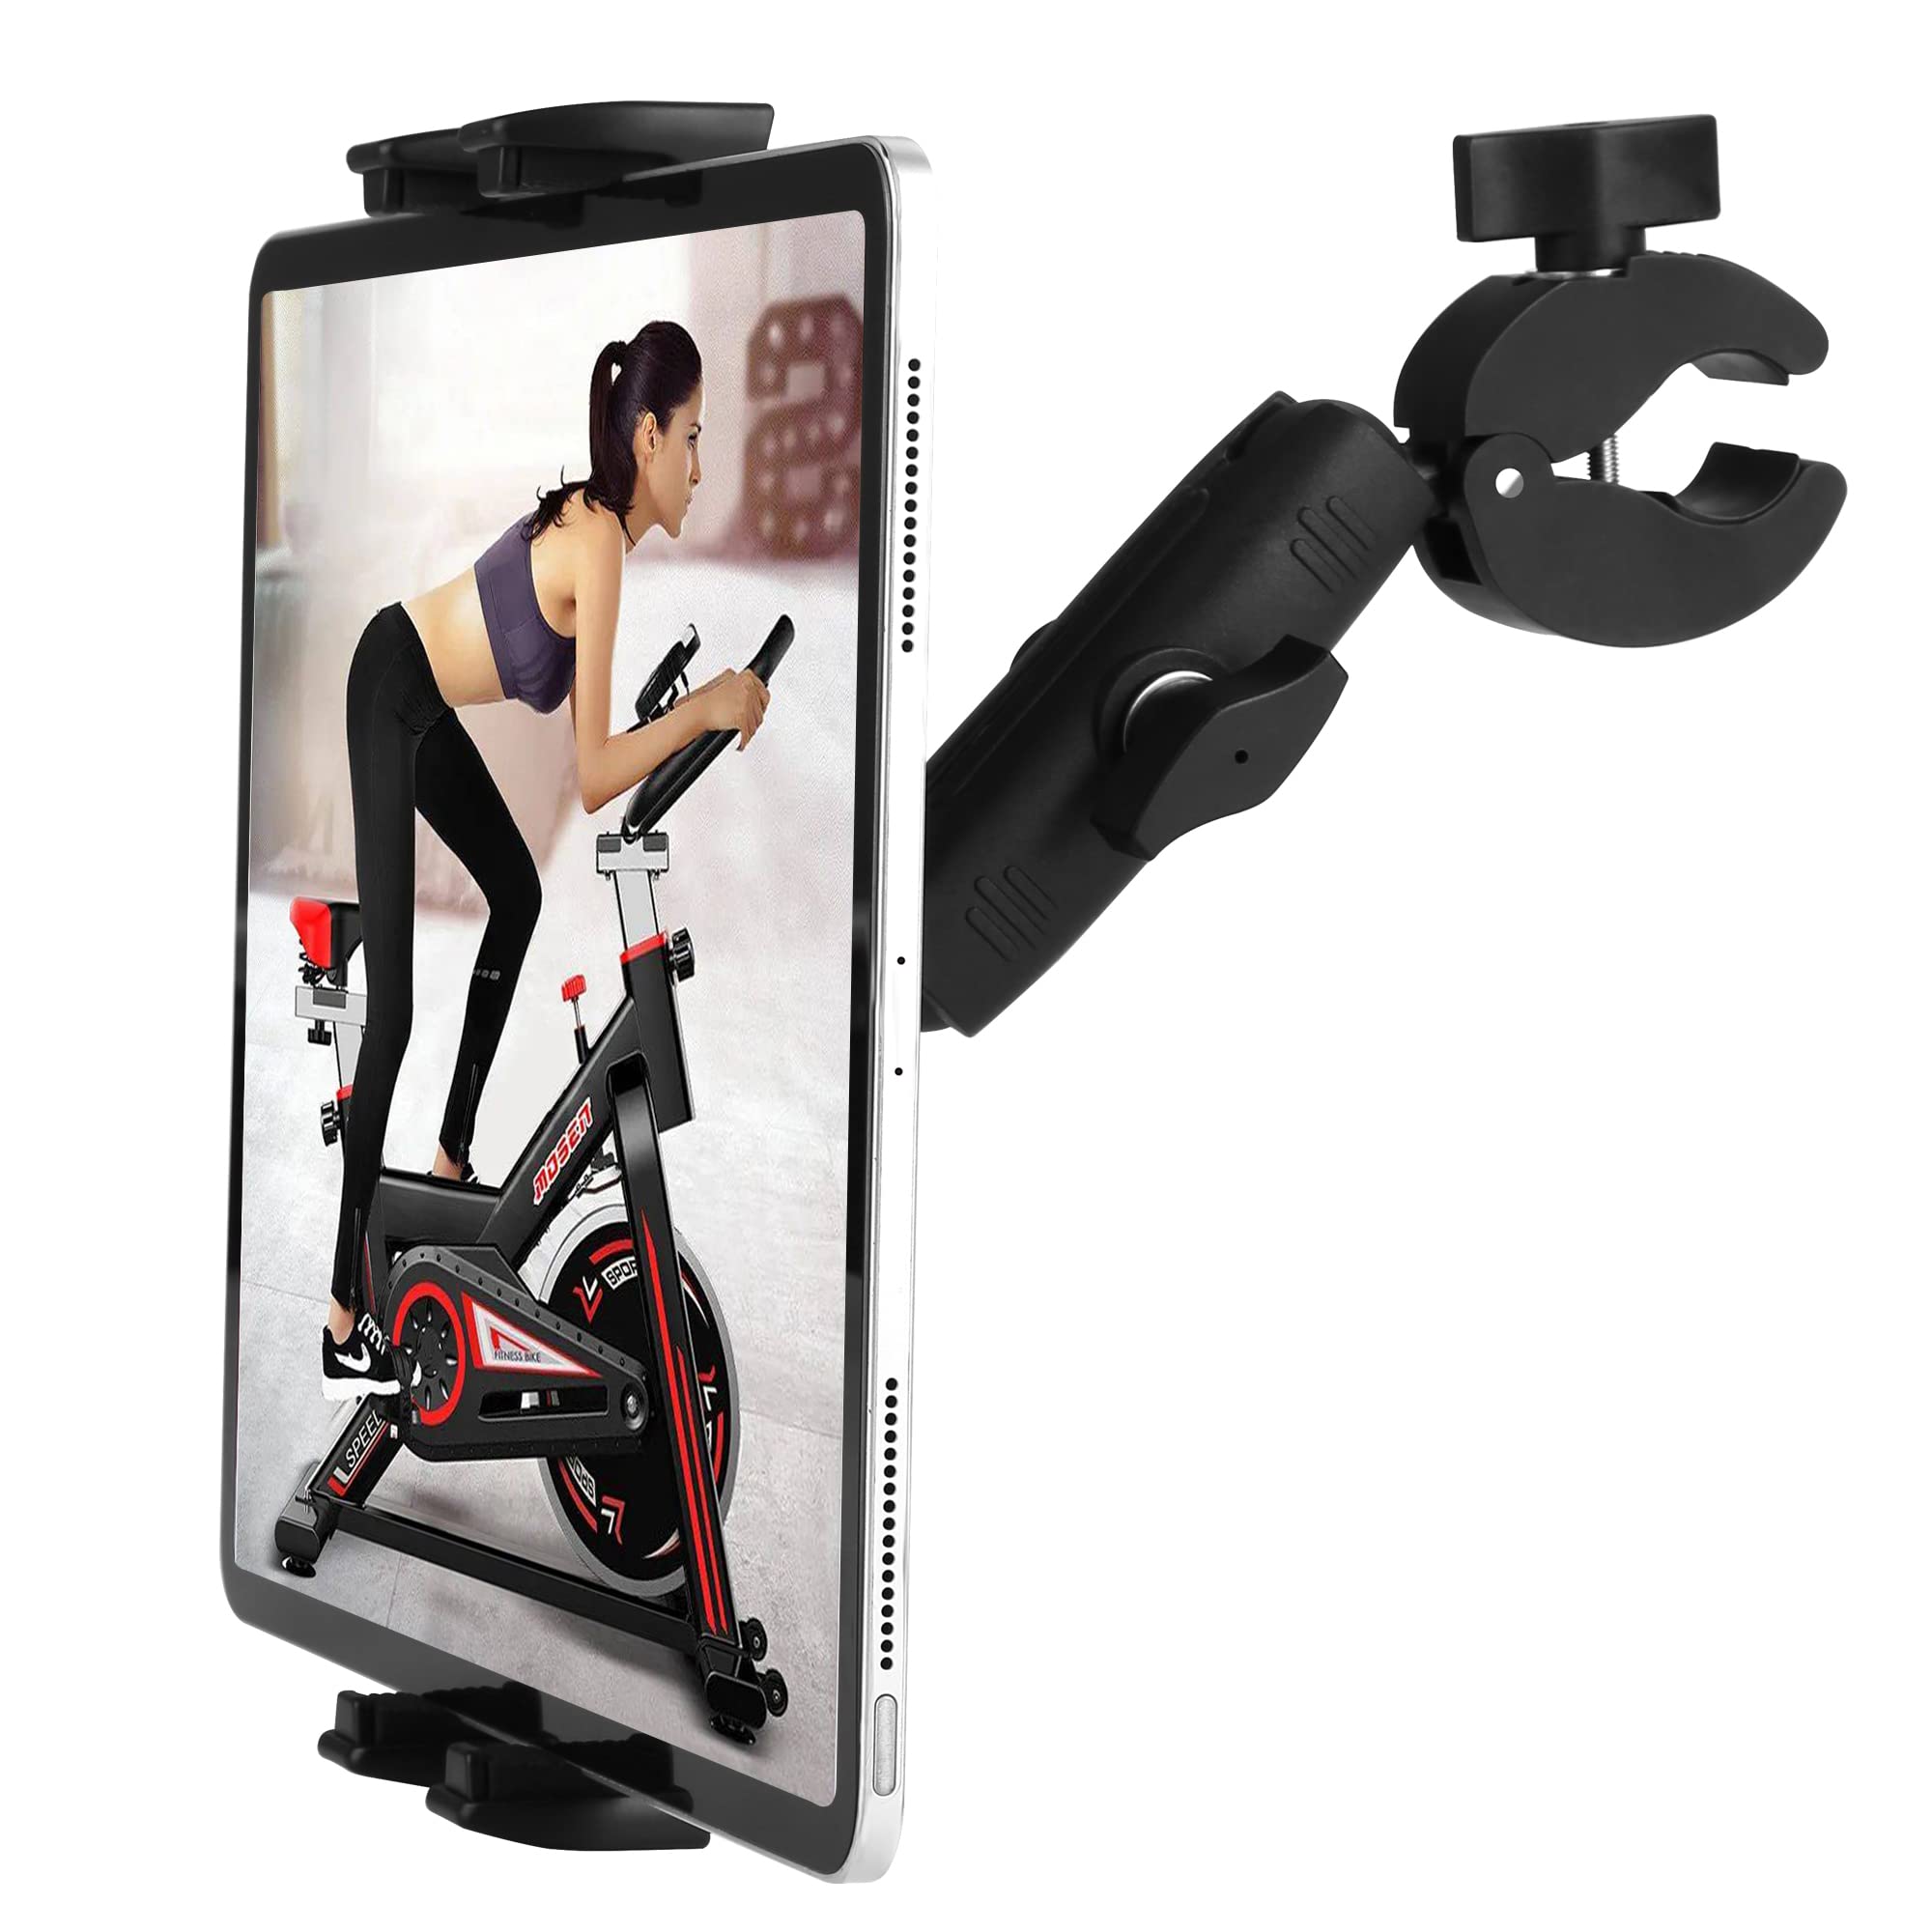 トレッドミルタブレットIpadスタンド自転車ハンドルスタンドダイナミック自転車向けElliptical Spin Bike Pelotonベビーカー4-13インチ電子機器、iPad Pro 12.9、Air、Mini、Galaxy Tabs、iPhone